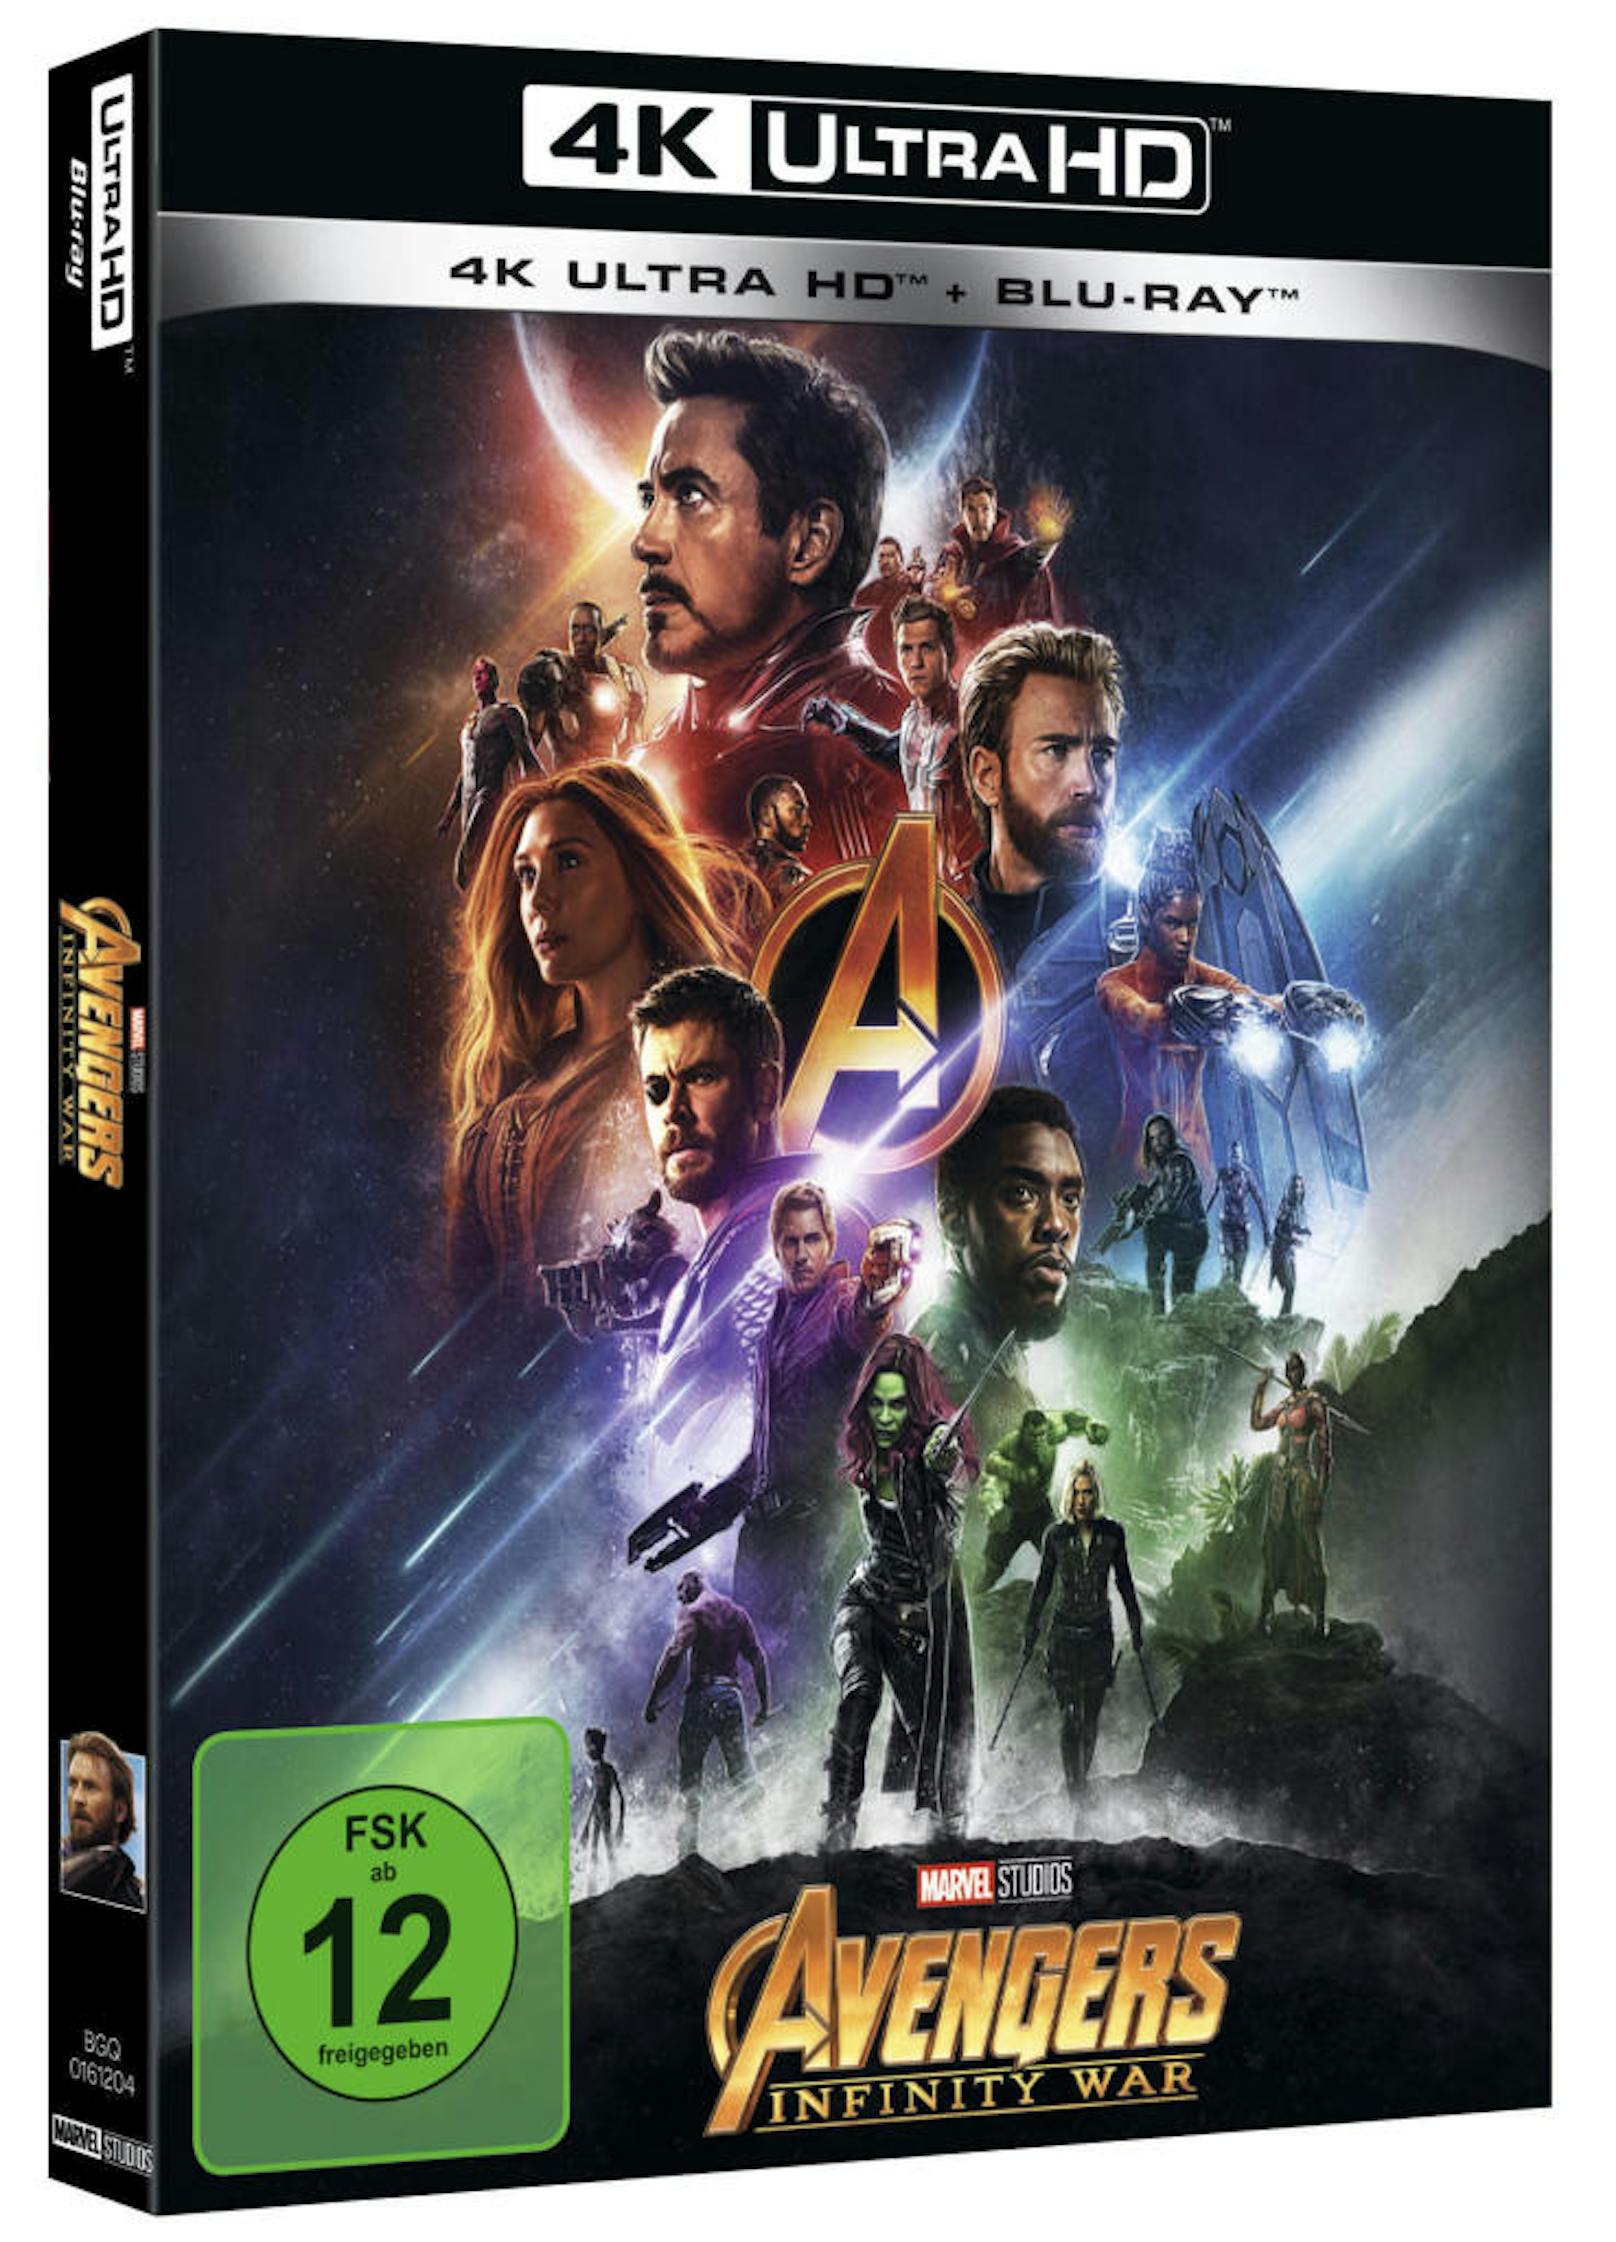 4K Ultra HD von von "Avengers: Infinity War"